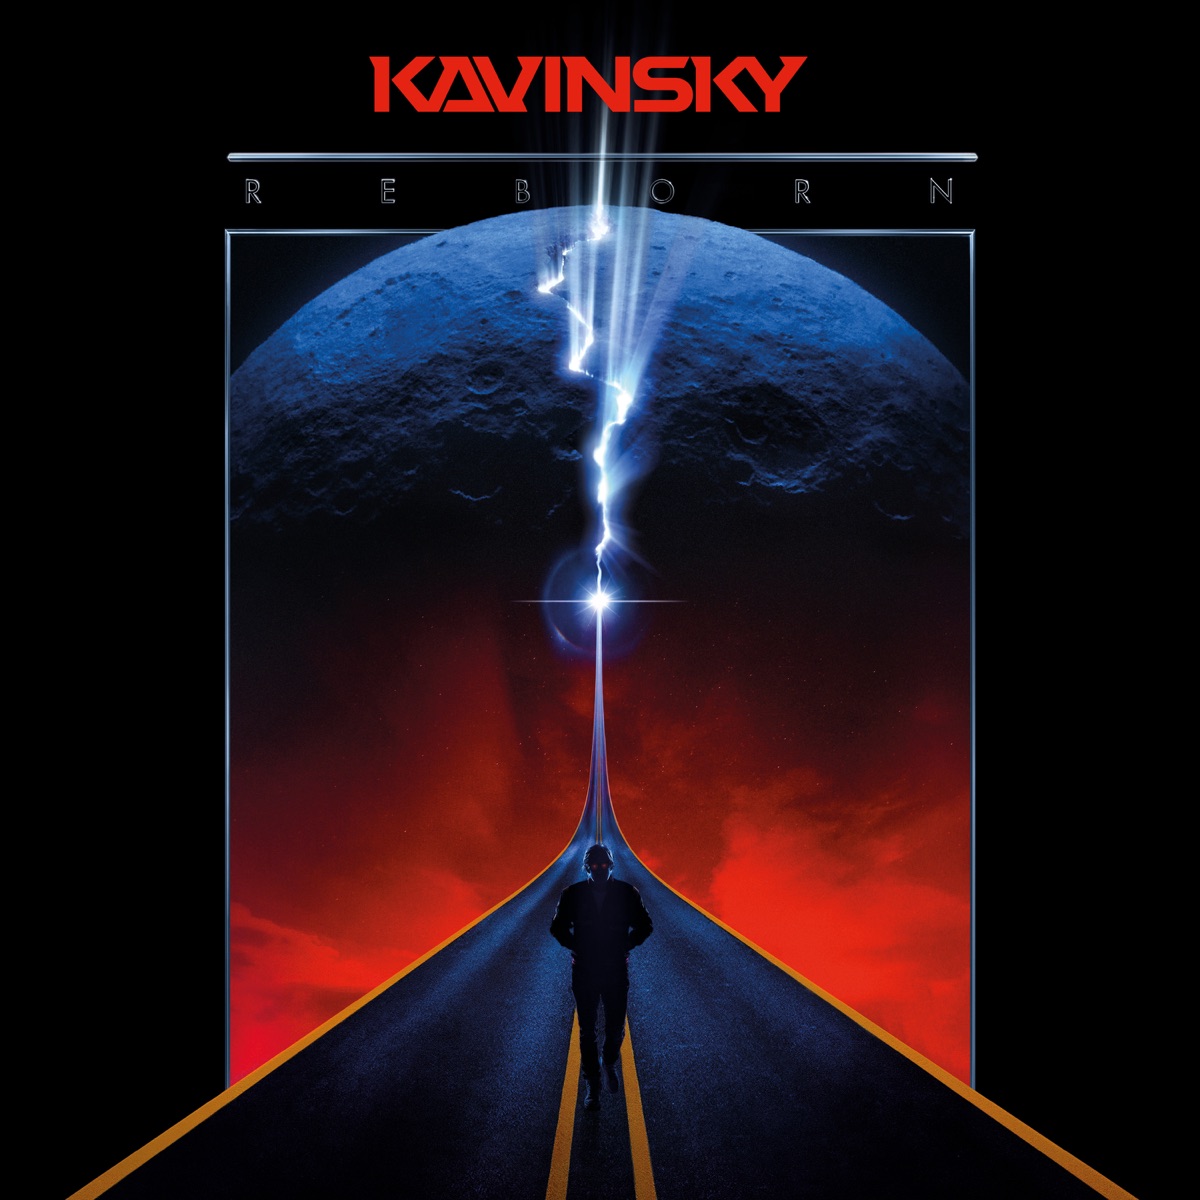 KAVINSKY - Nightcall -  Music